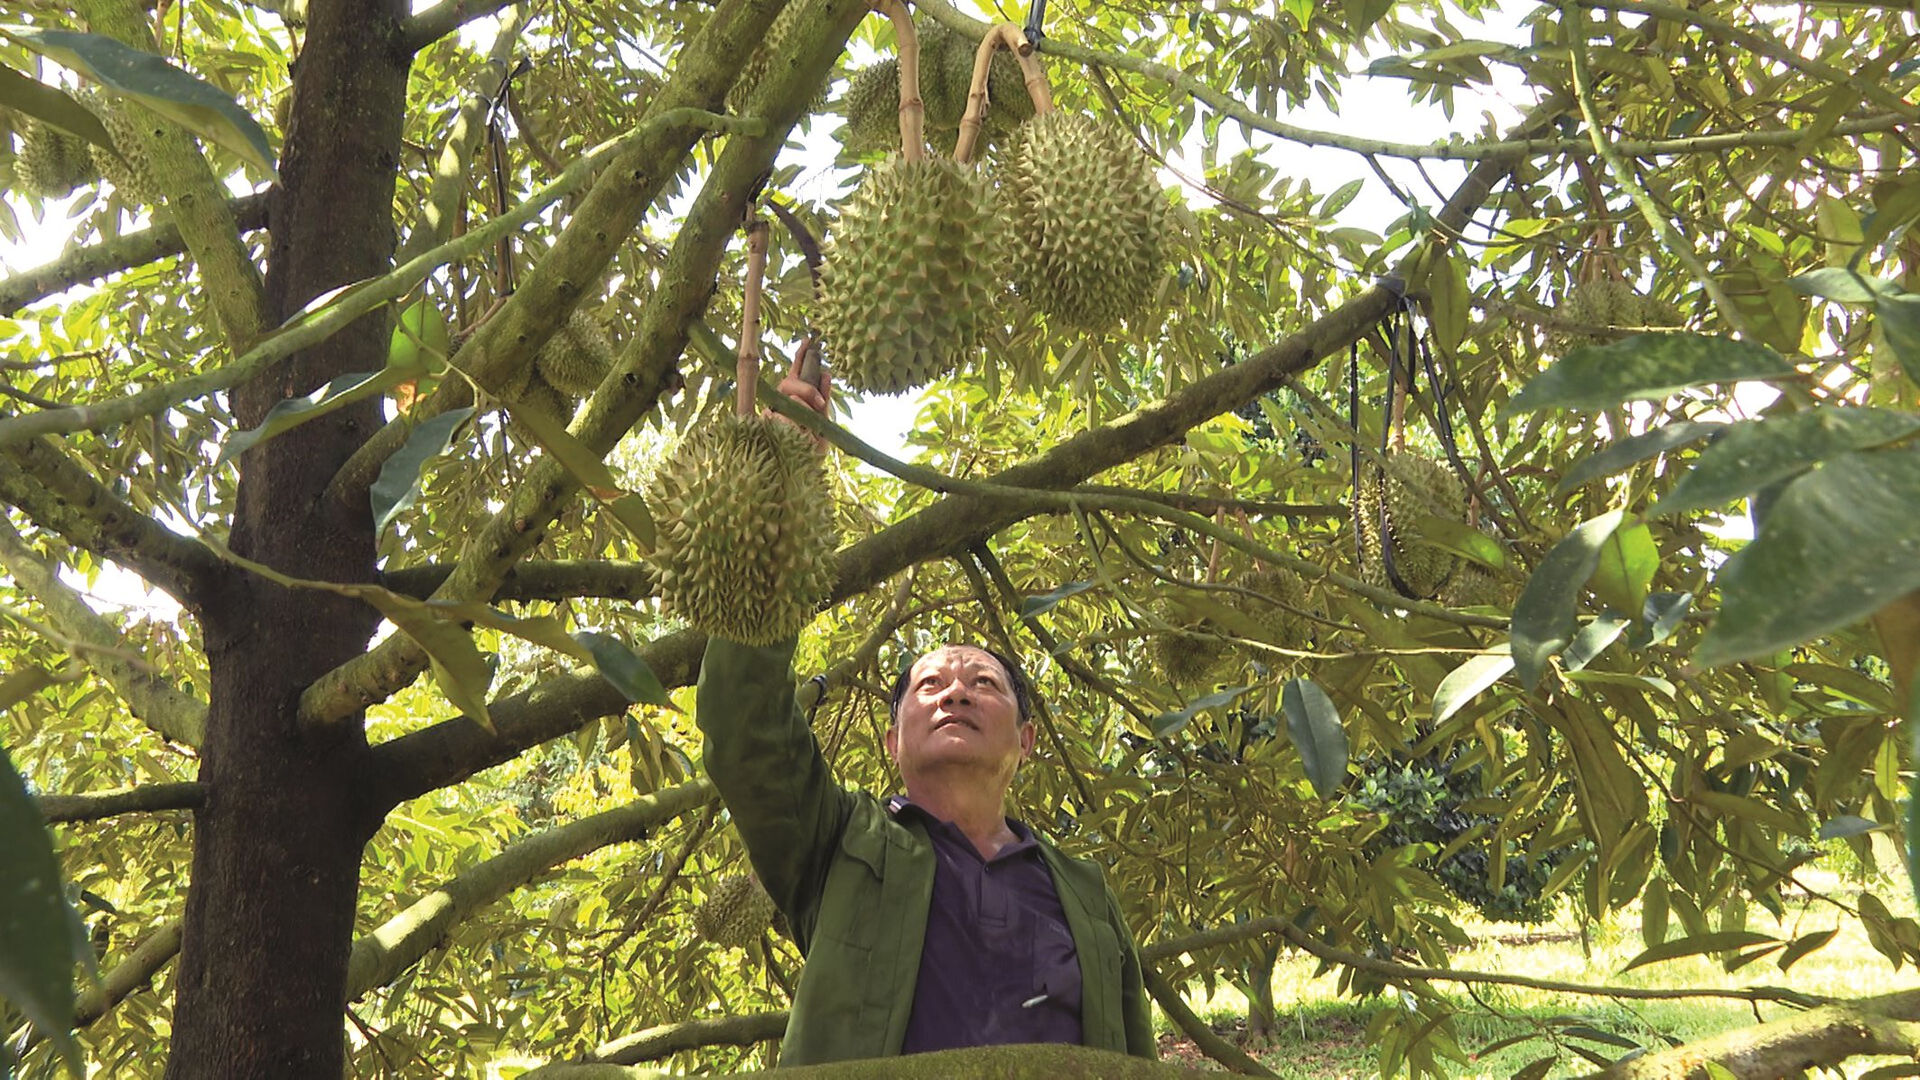 Ở Bình Thuận, trồng thứ cây ra trái treo từ gốc lên ngọn, tới mùa thơm khắp làng, có nhà lãi 1,5 tỷ/ha  - Ảnh 1.